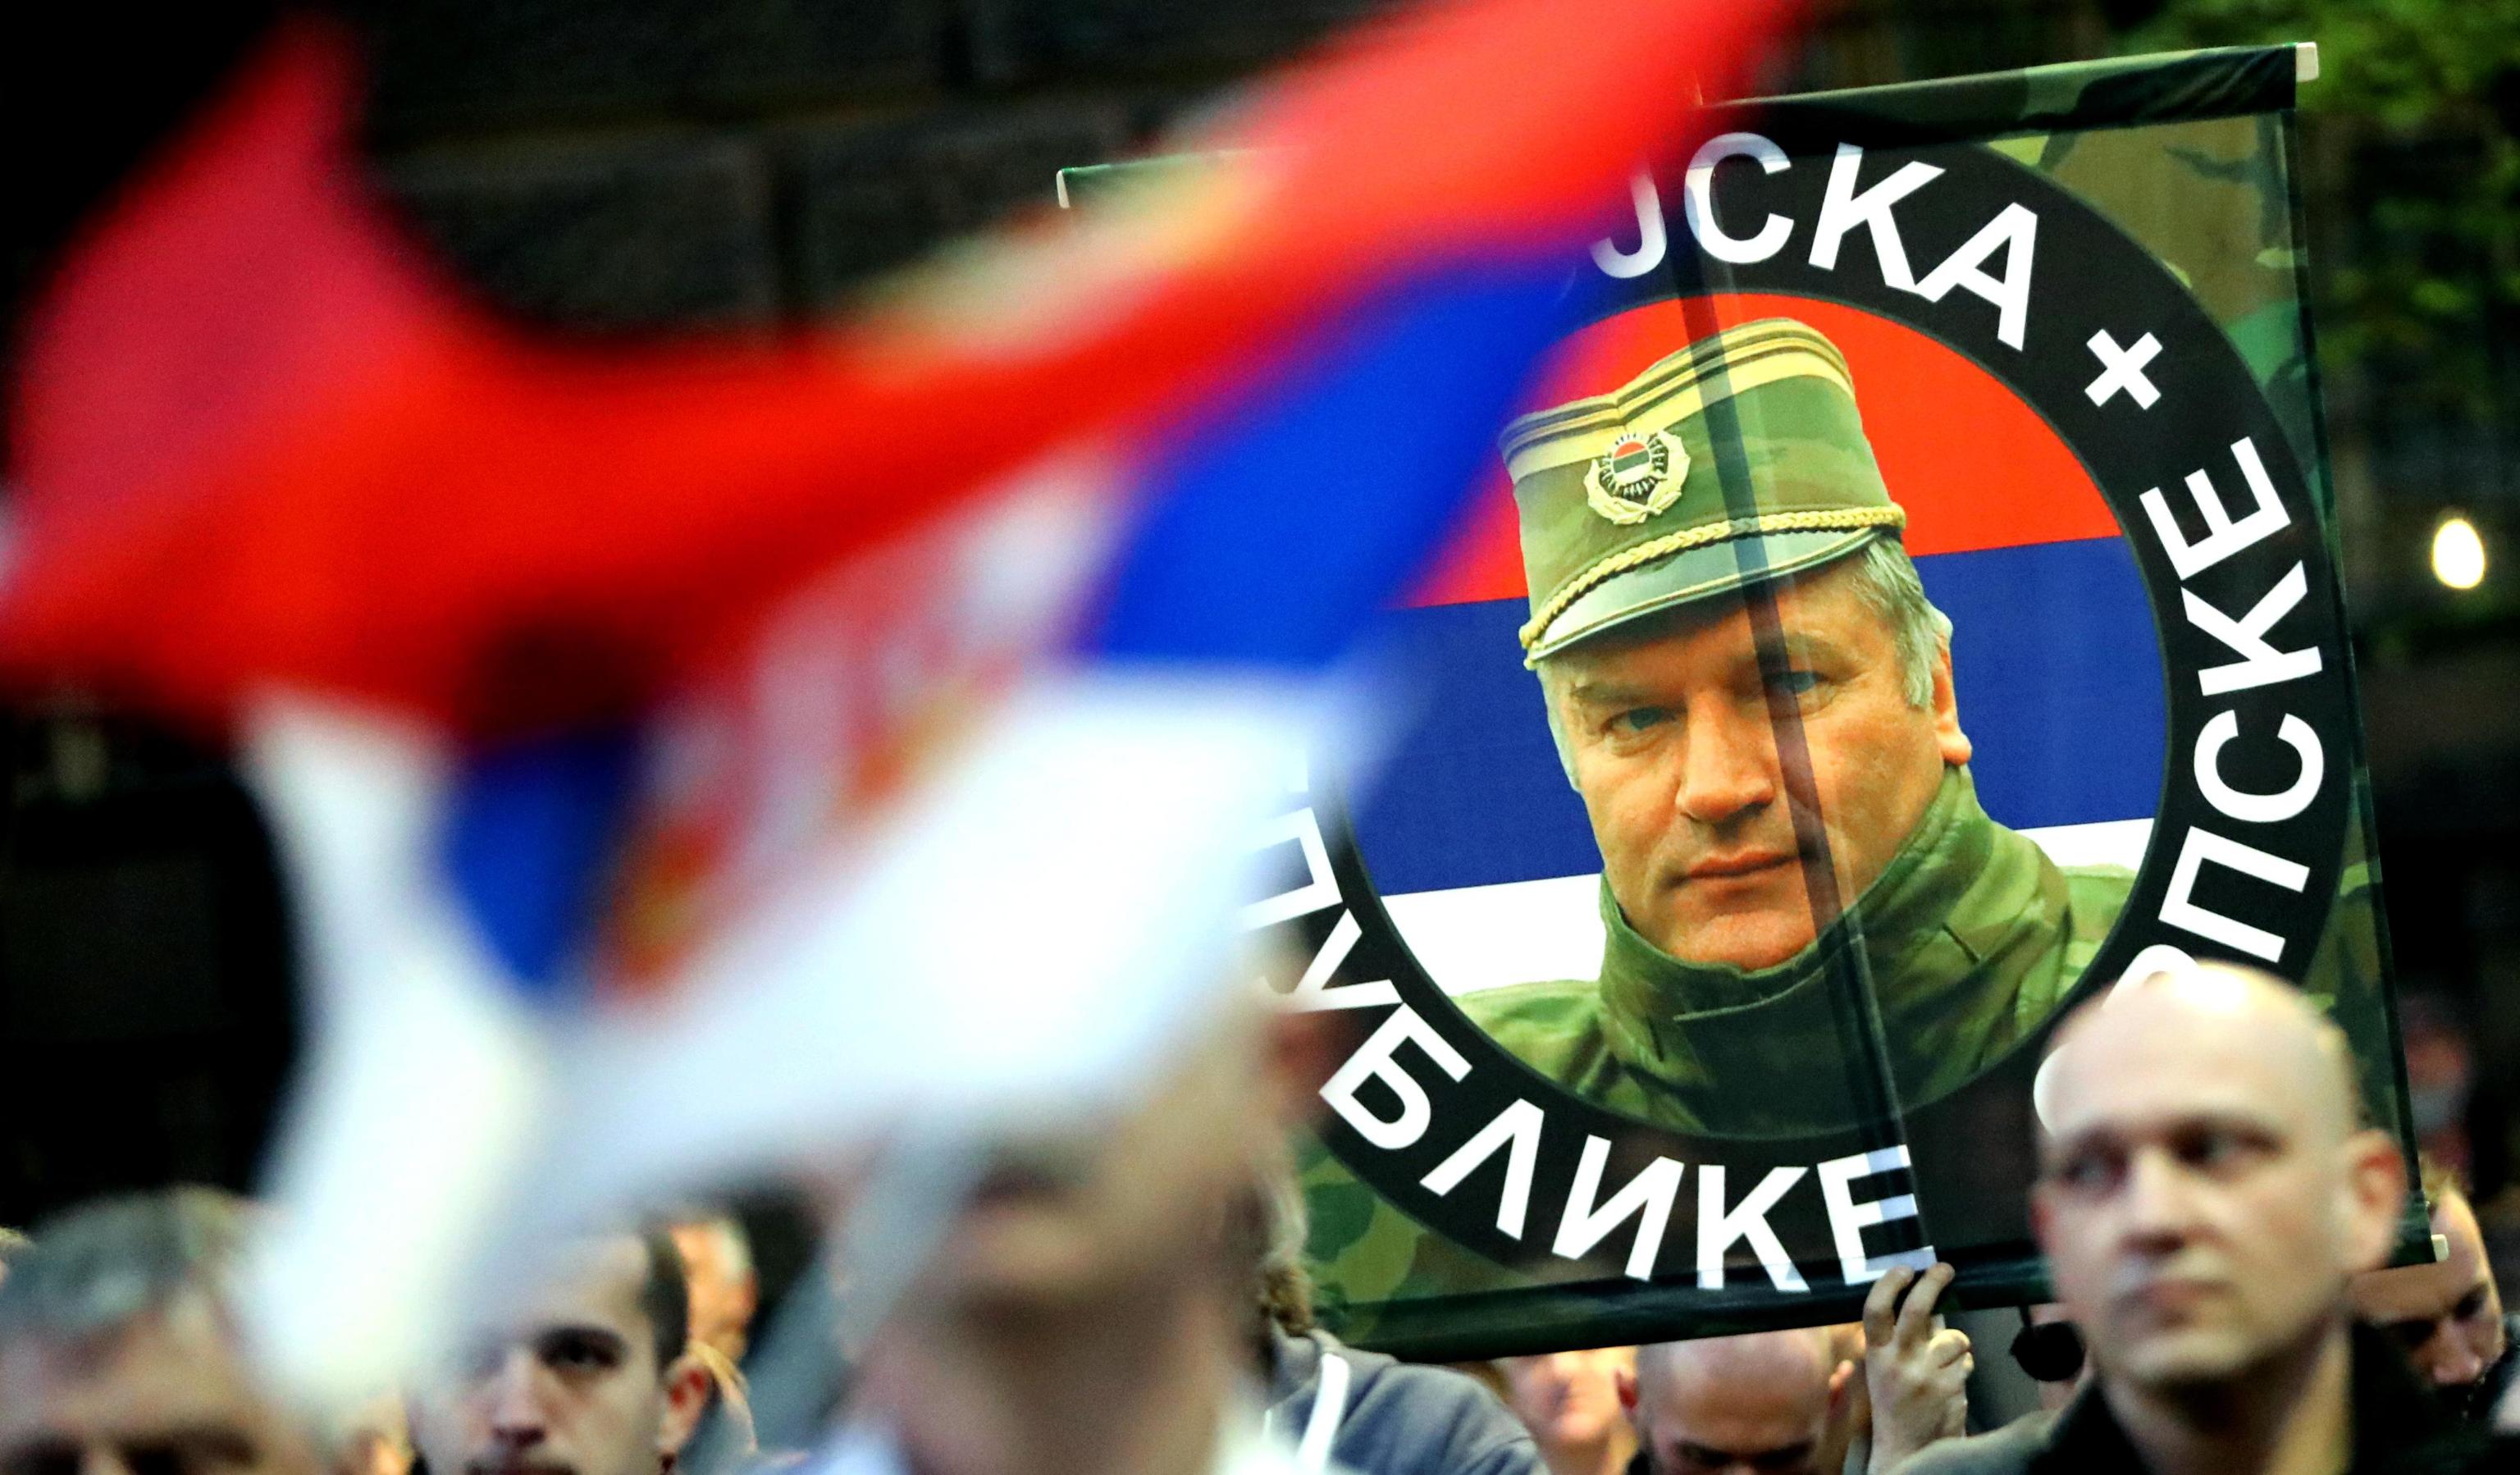 Oltre alle bandiere serbe, presenti foto del comandante militare dei serbo-bosniaci, Ratko Mladic